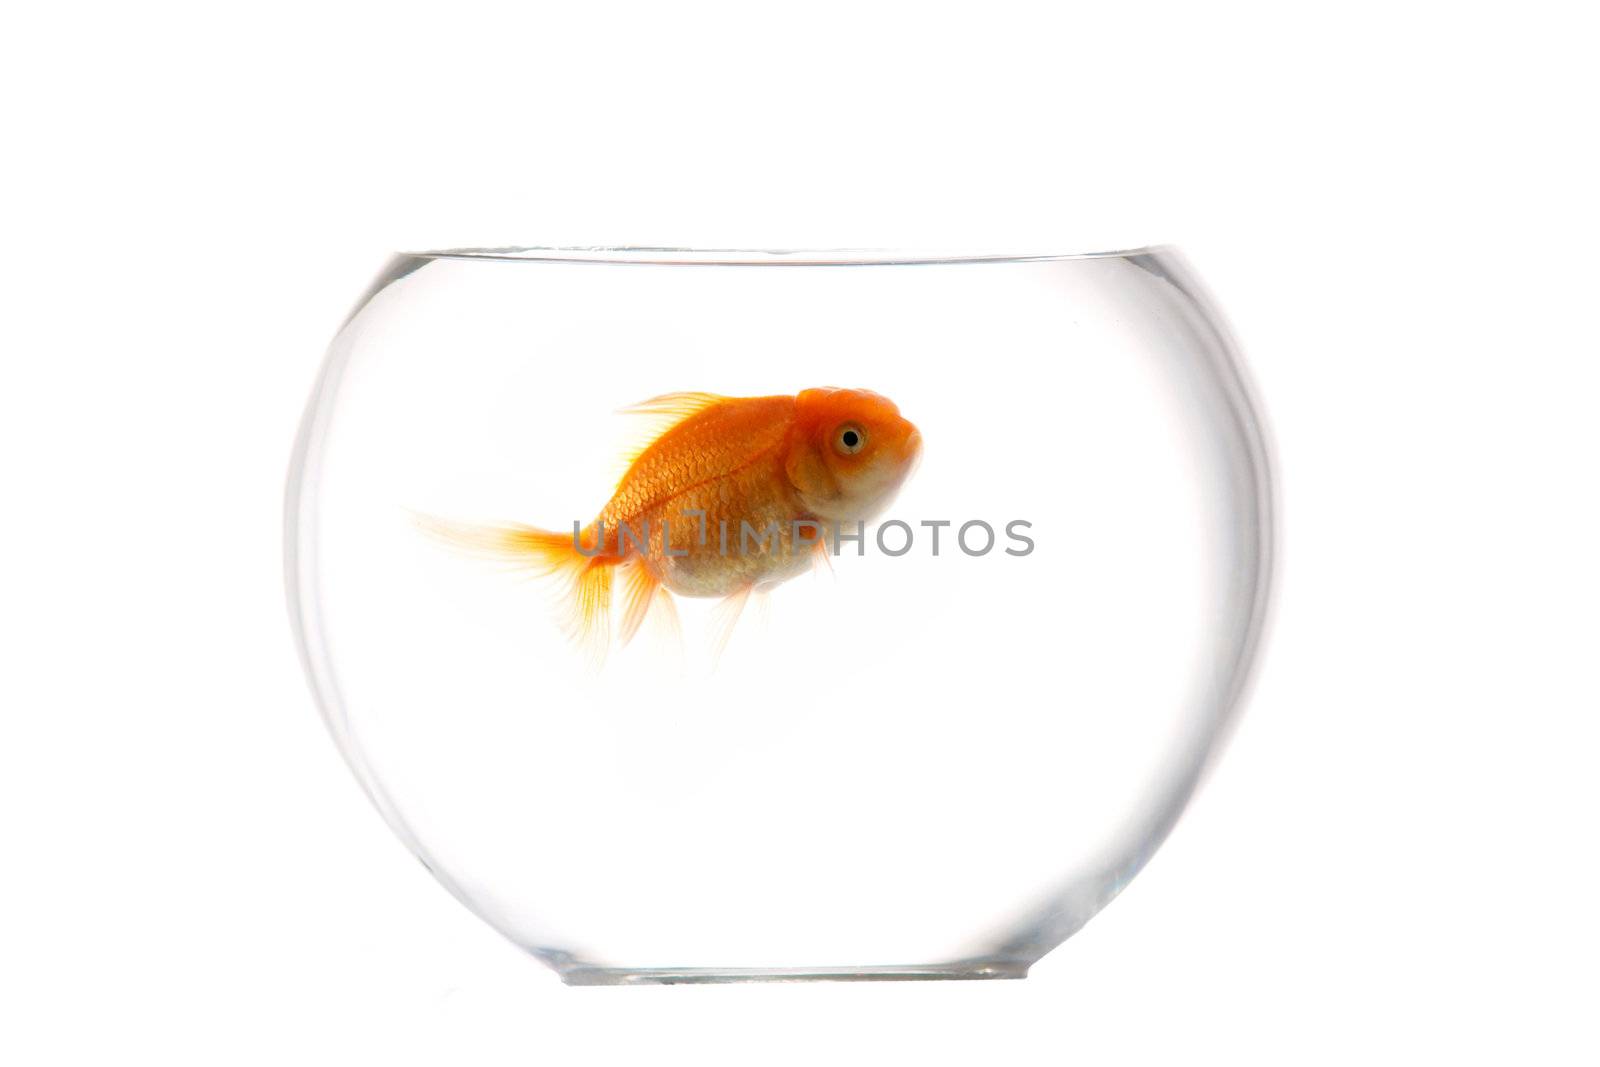 An image of gold fish in aquarium